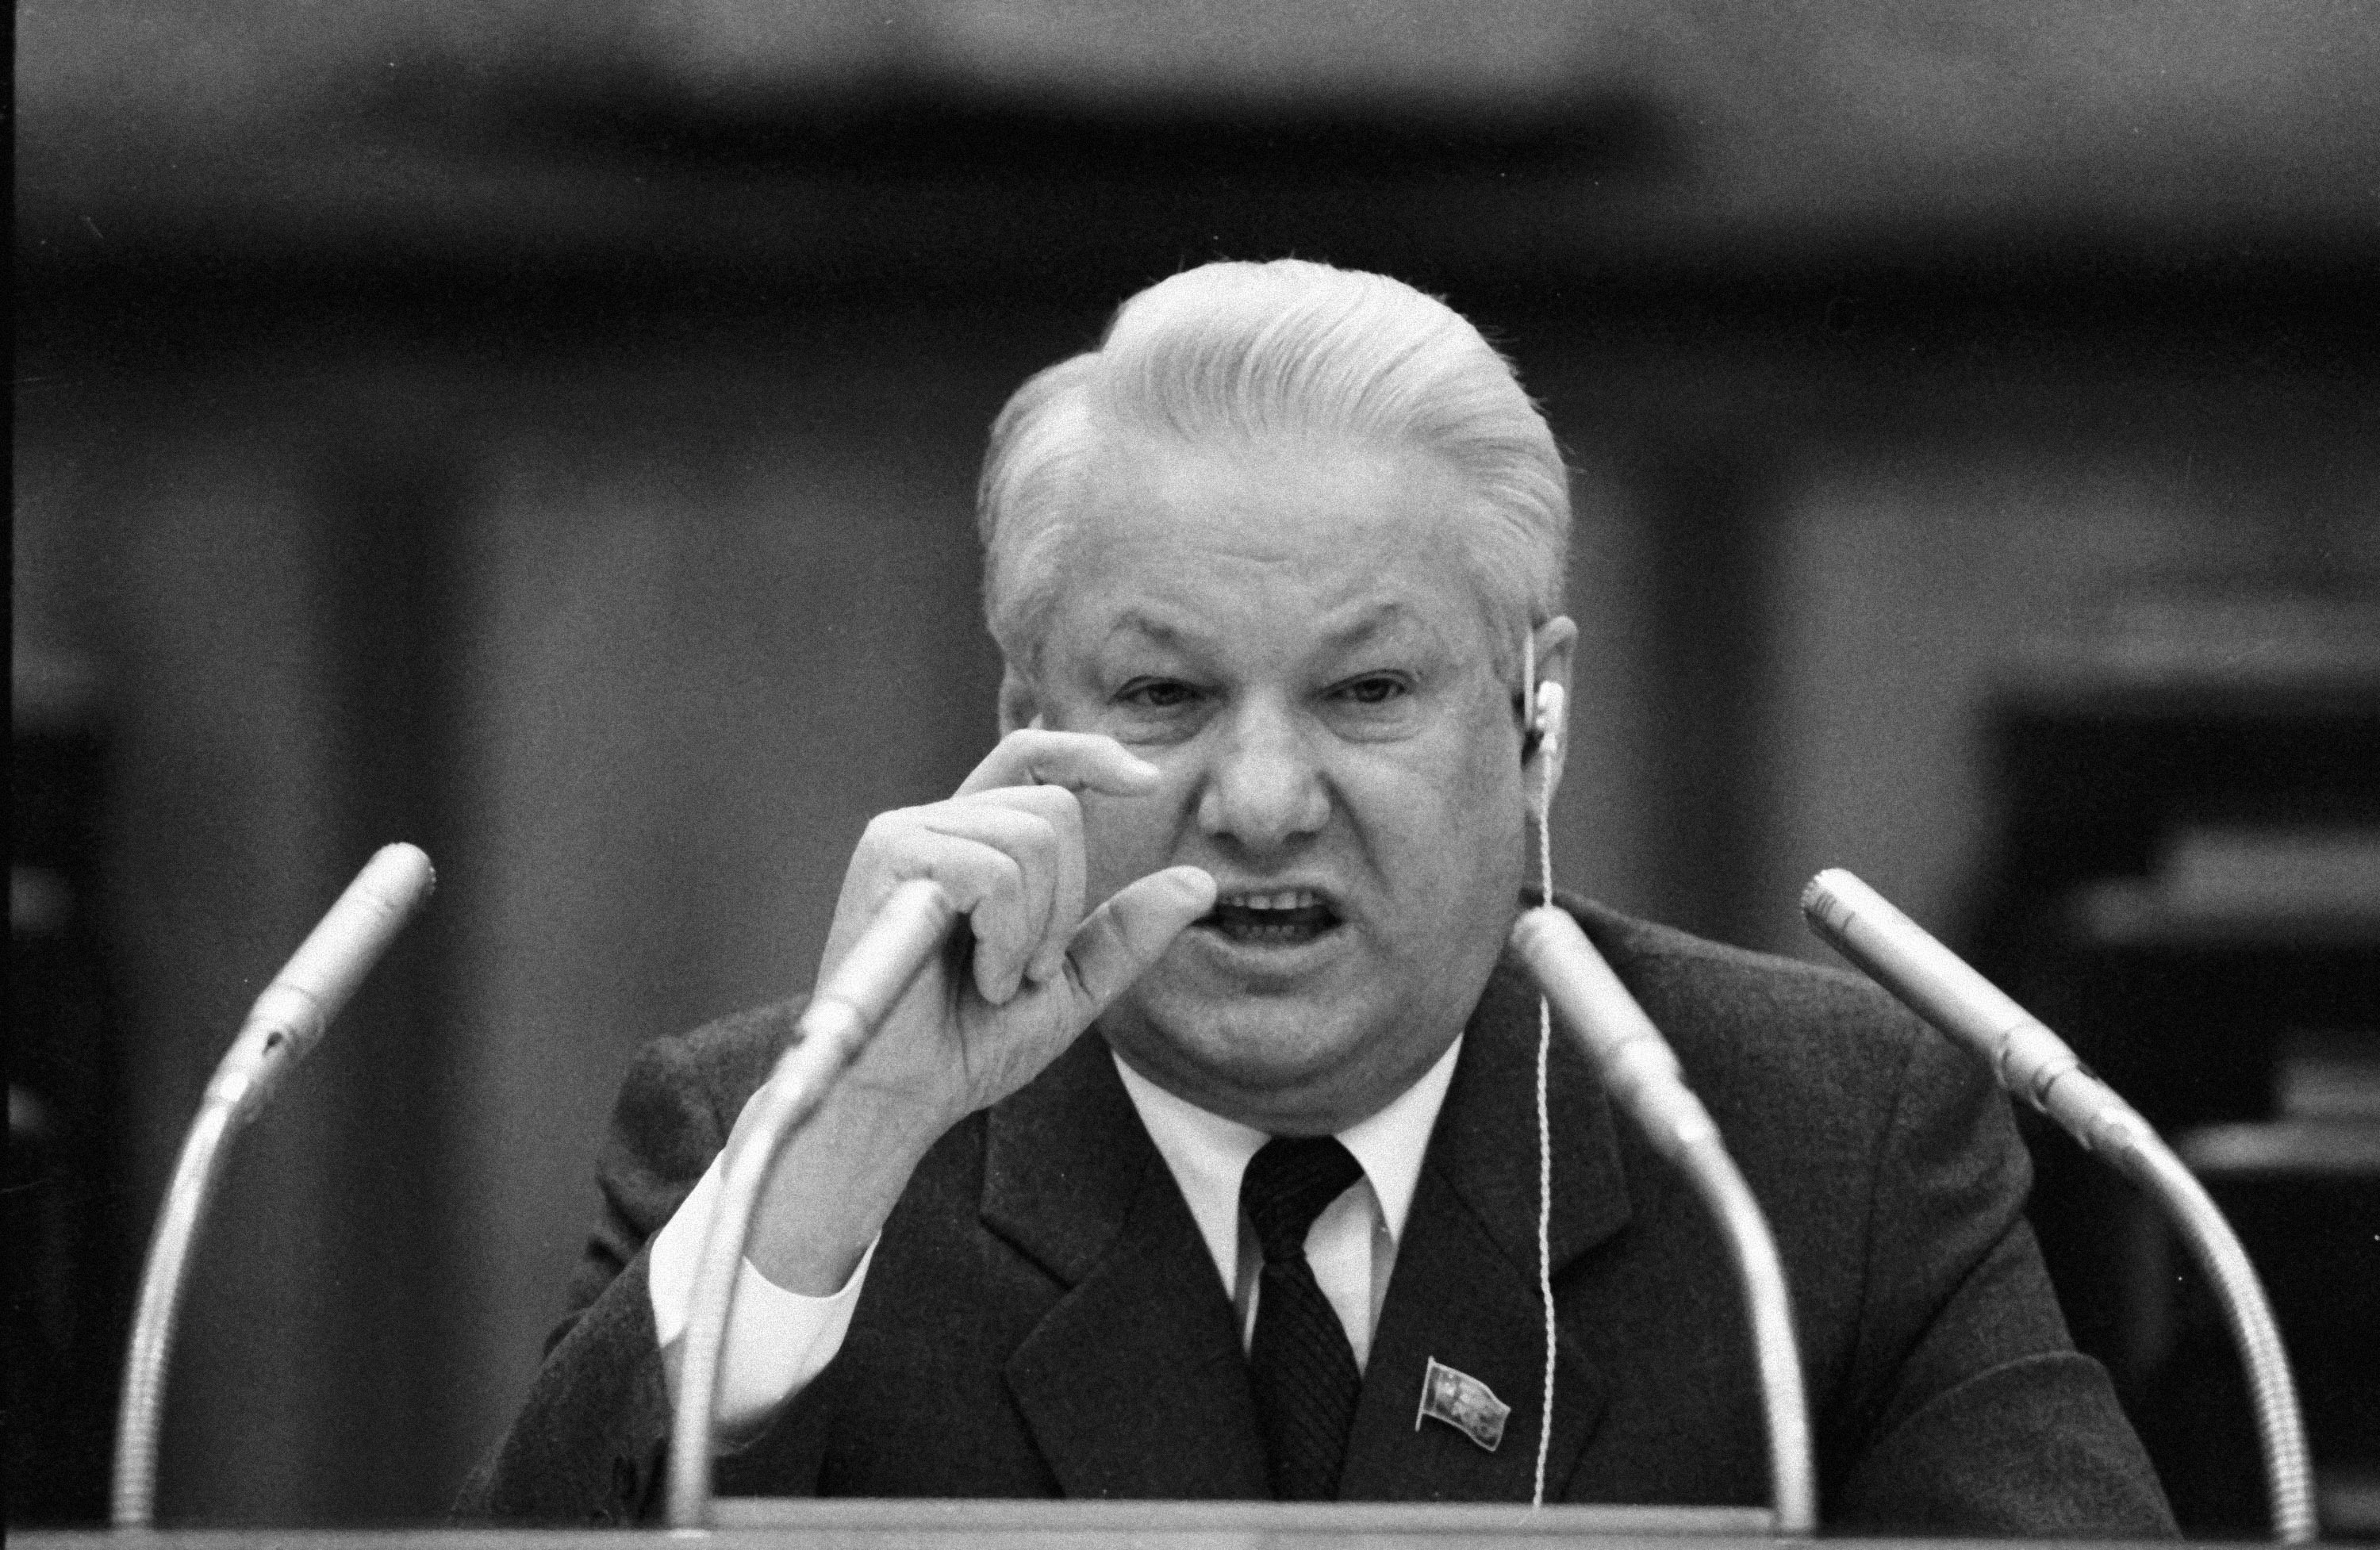 5 съезд народных депутатов. Ельцин 1990. Ельцин 1991.